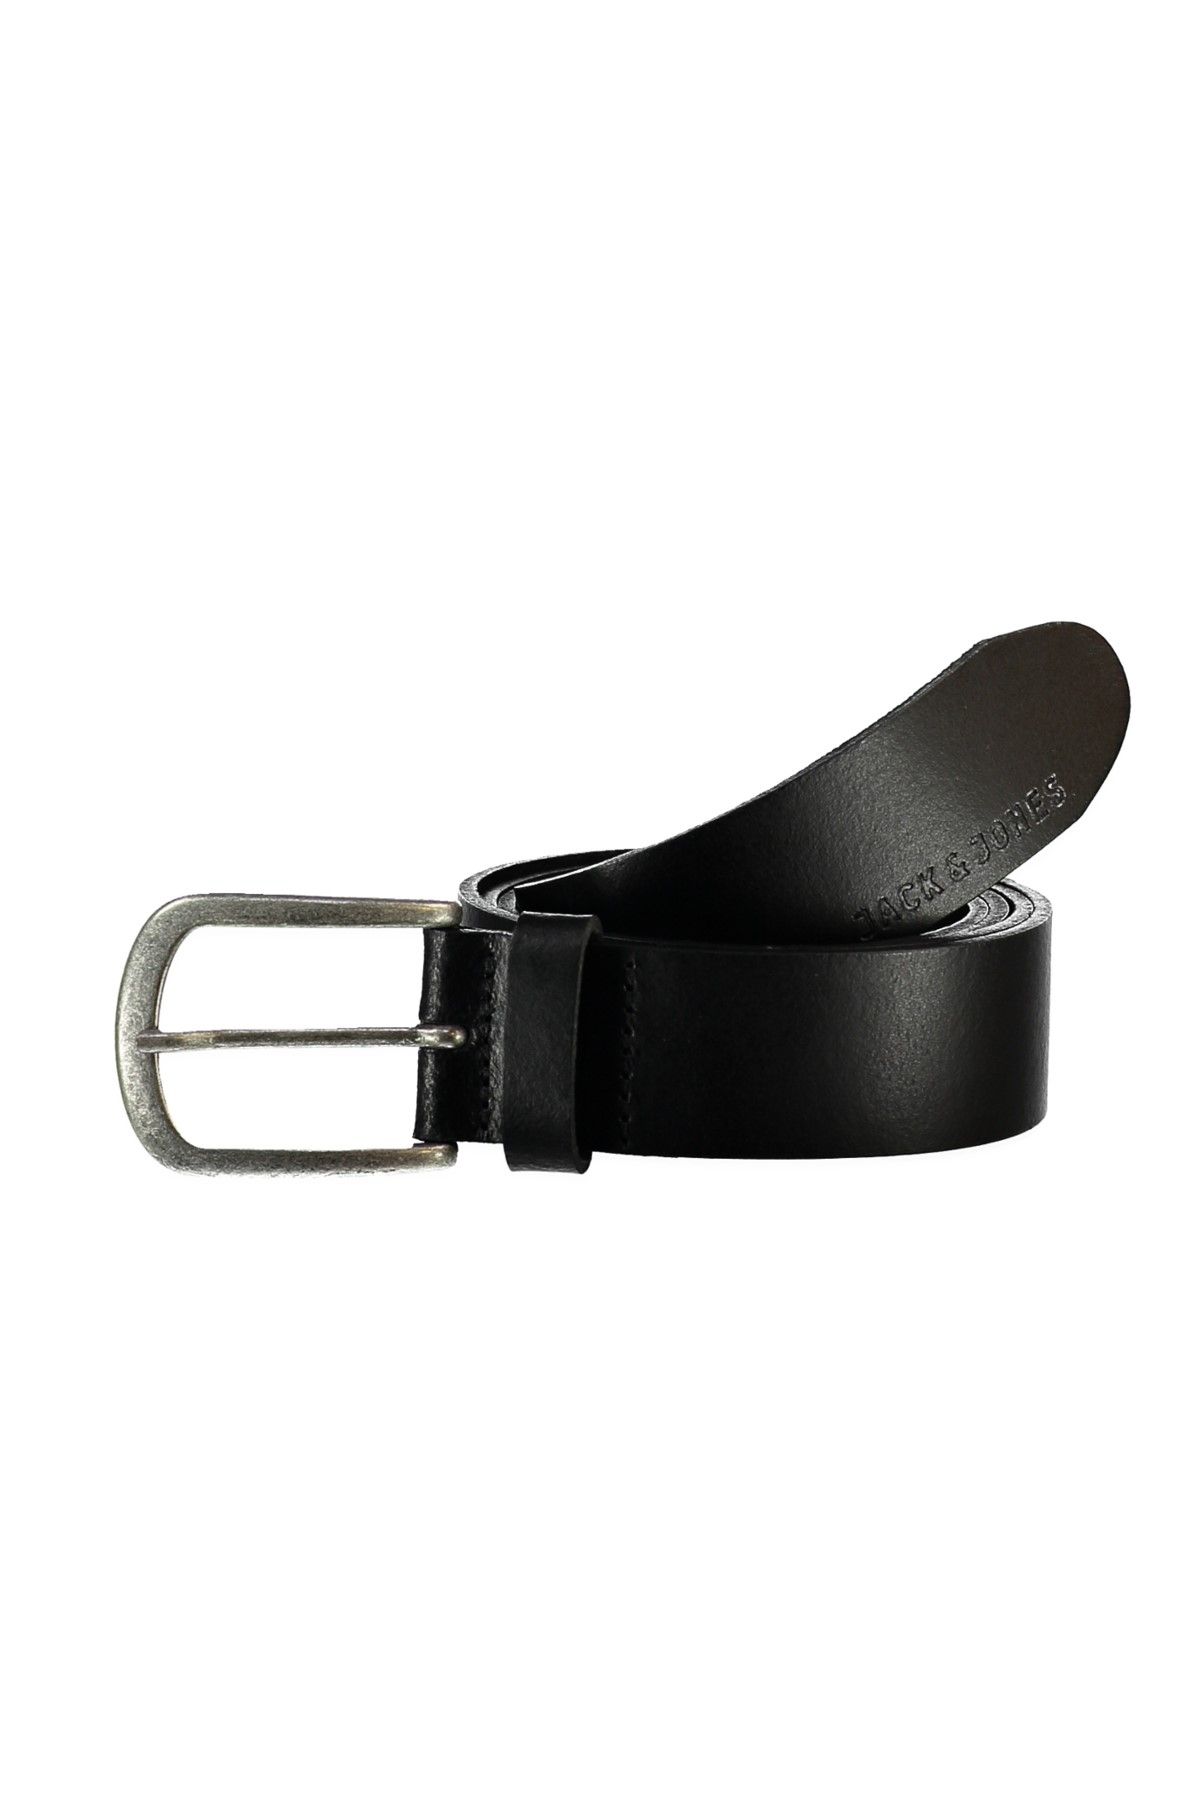 Jack & Jones Kemer - Ace Leather Belt Noos-12118200